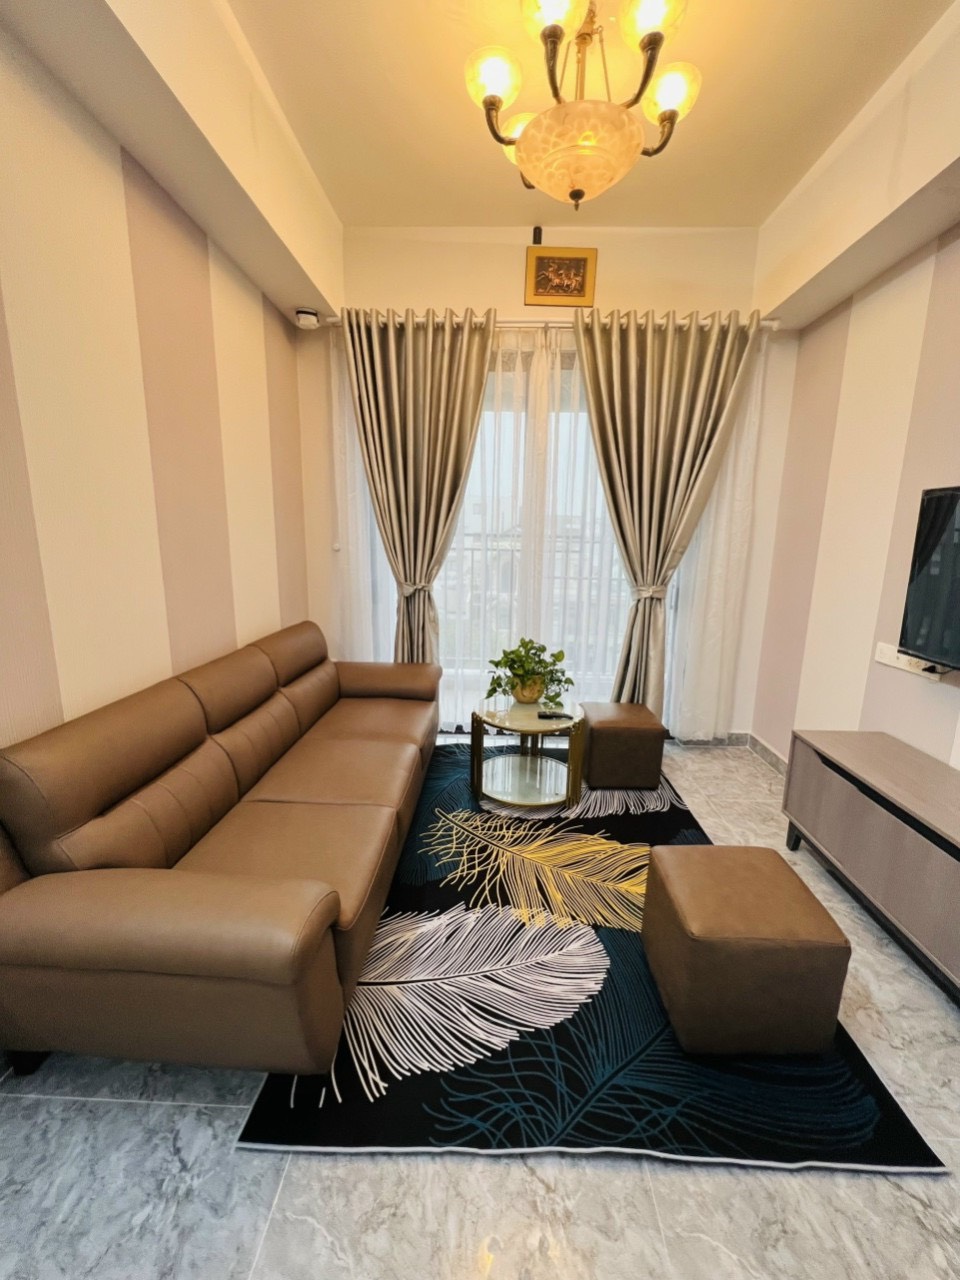 Cho thuê căn hộ cao cấp Botanica Premier 75m2 2PN Full nội thất mới 100%, gần sân bay, LH: 0372972566 Hải 